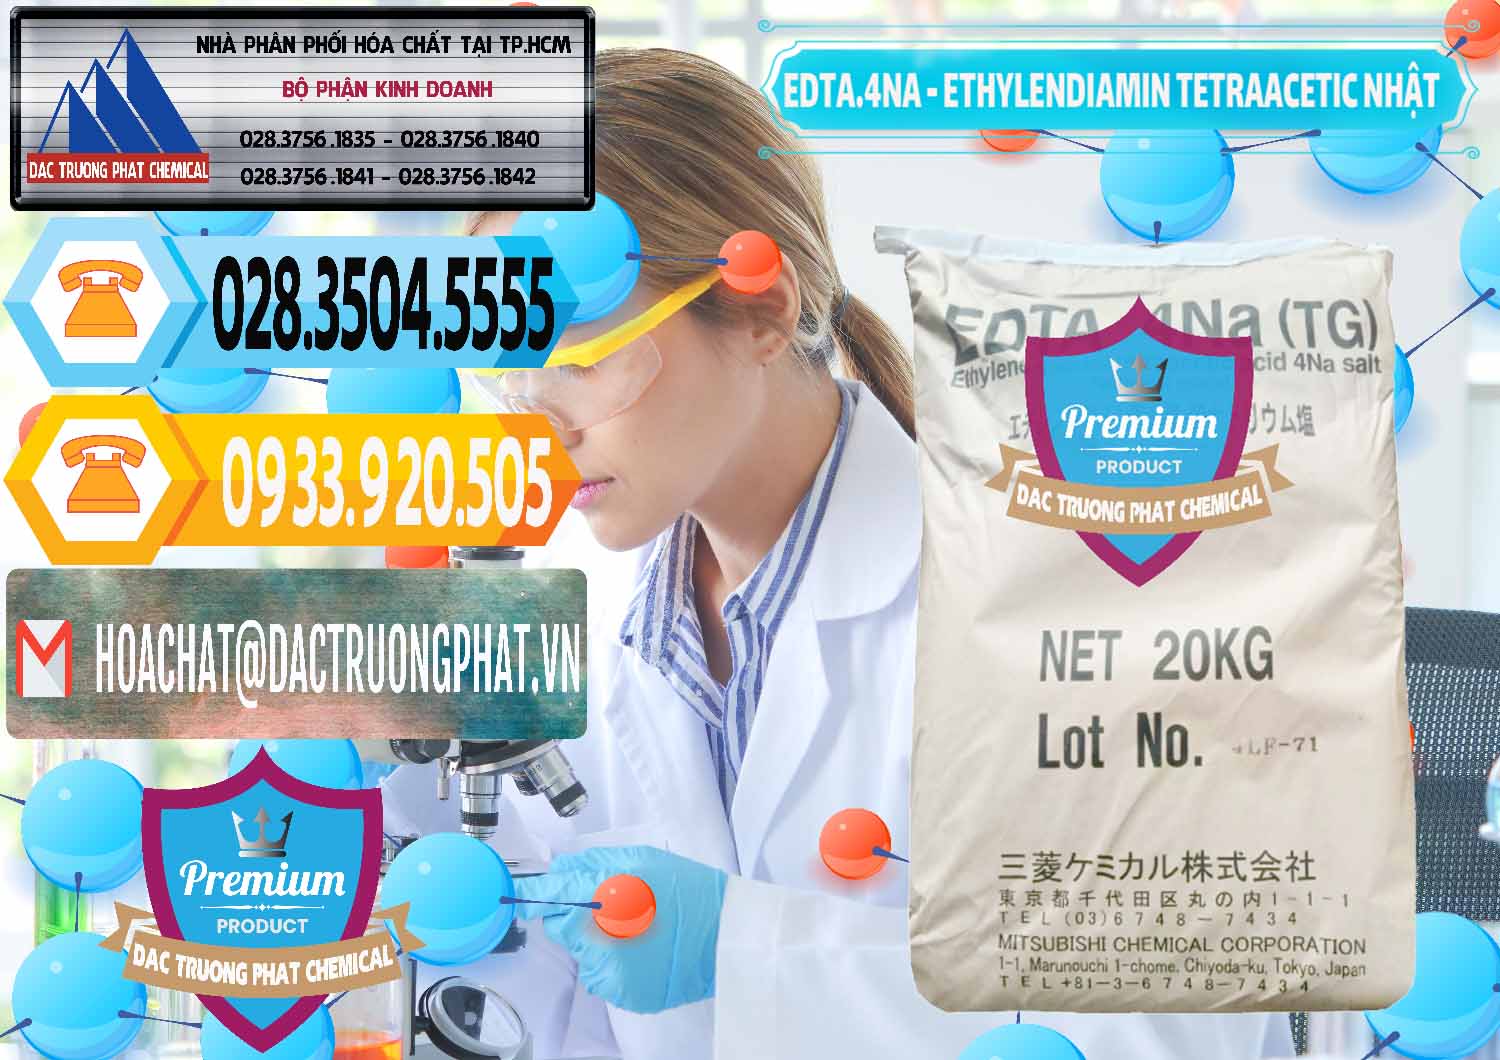 Cty chuyên nhập khẩu & bán EDTA 4Na - Ethylendiamin Tetraacetic Nhật Bản Japan - 0482 - Đơn vị bán ( cung cấp ) hóa chất tại TP.HCM - hoachattayrua.net